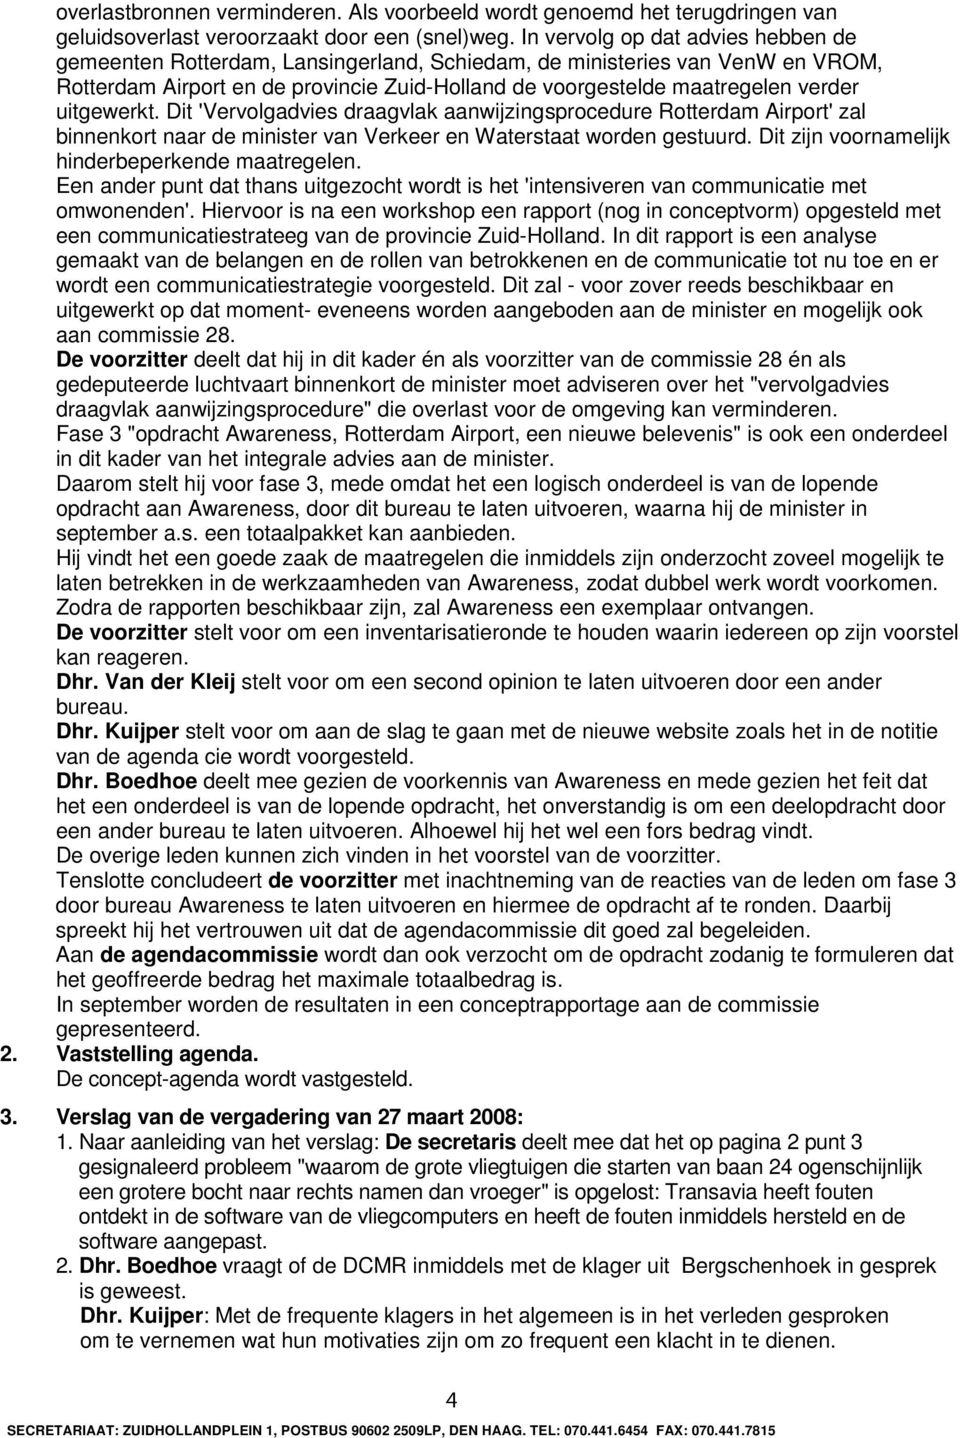 uitgewerkt. Dit 'Vervolgadvies draagvlak aanwijzingsprocedure Rotterdam Airport' zal binnenkort naar de minister van Verkeer en Waterstaat worden gestuurd.